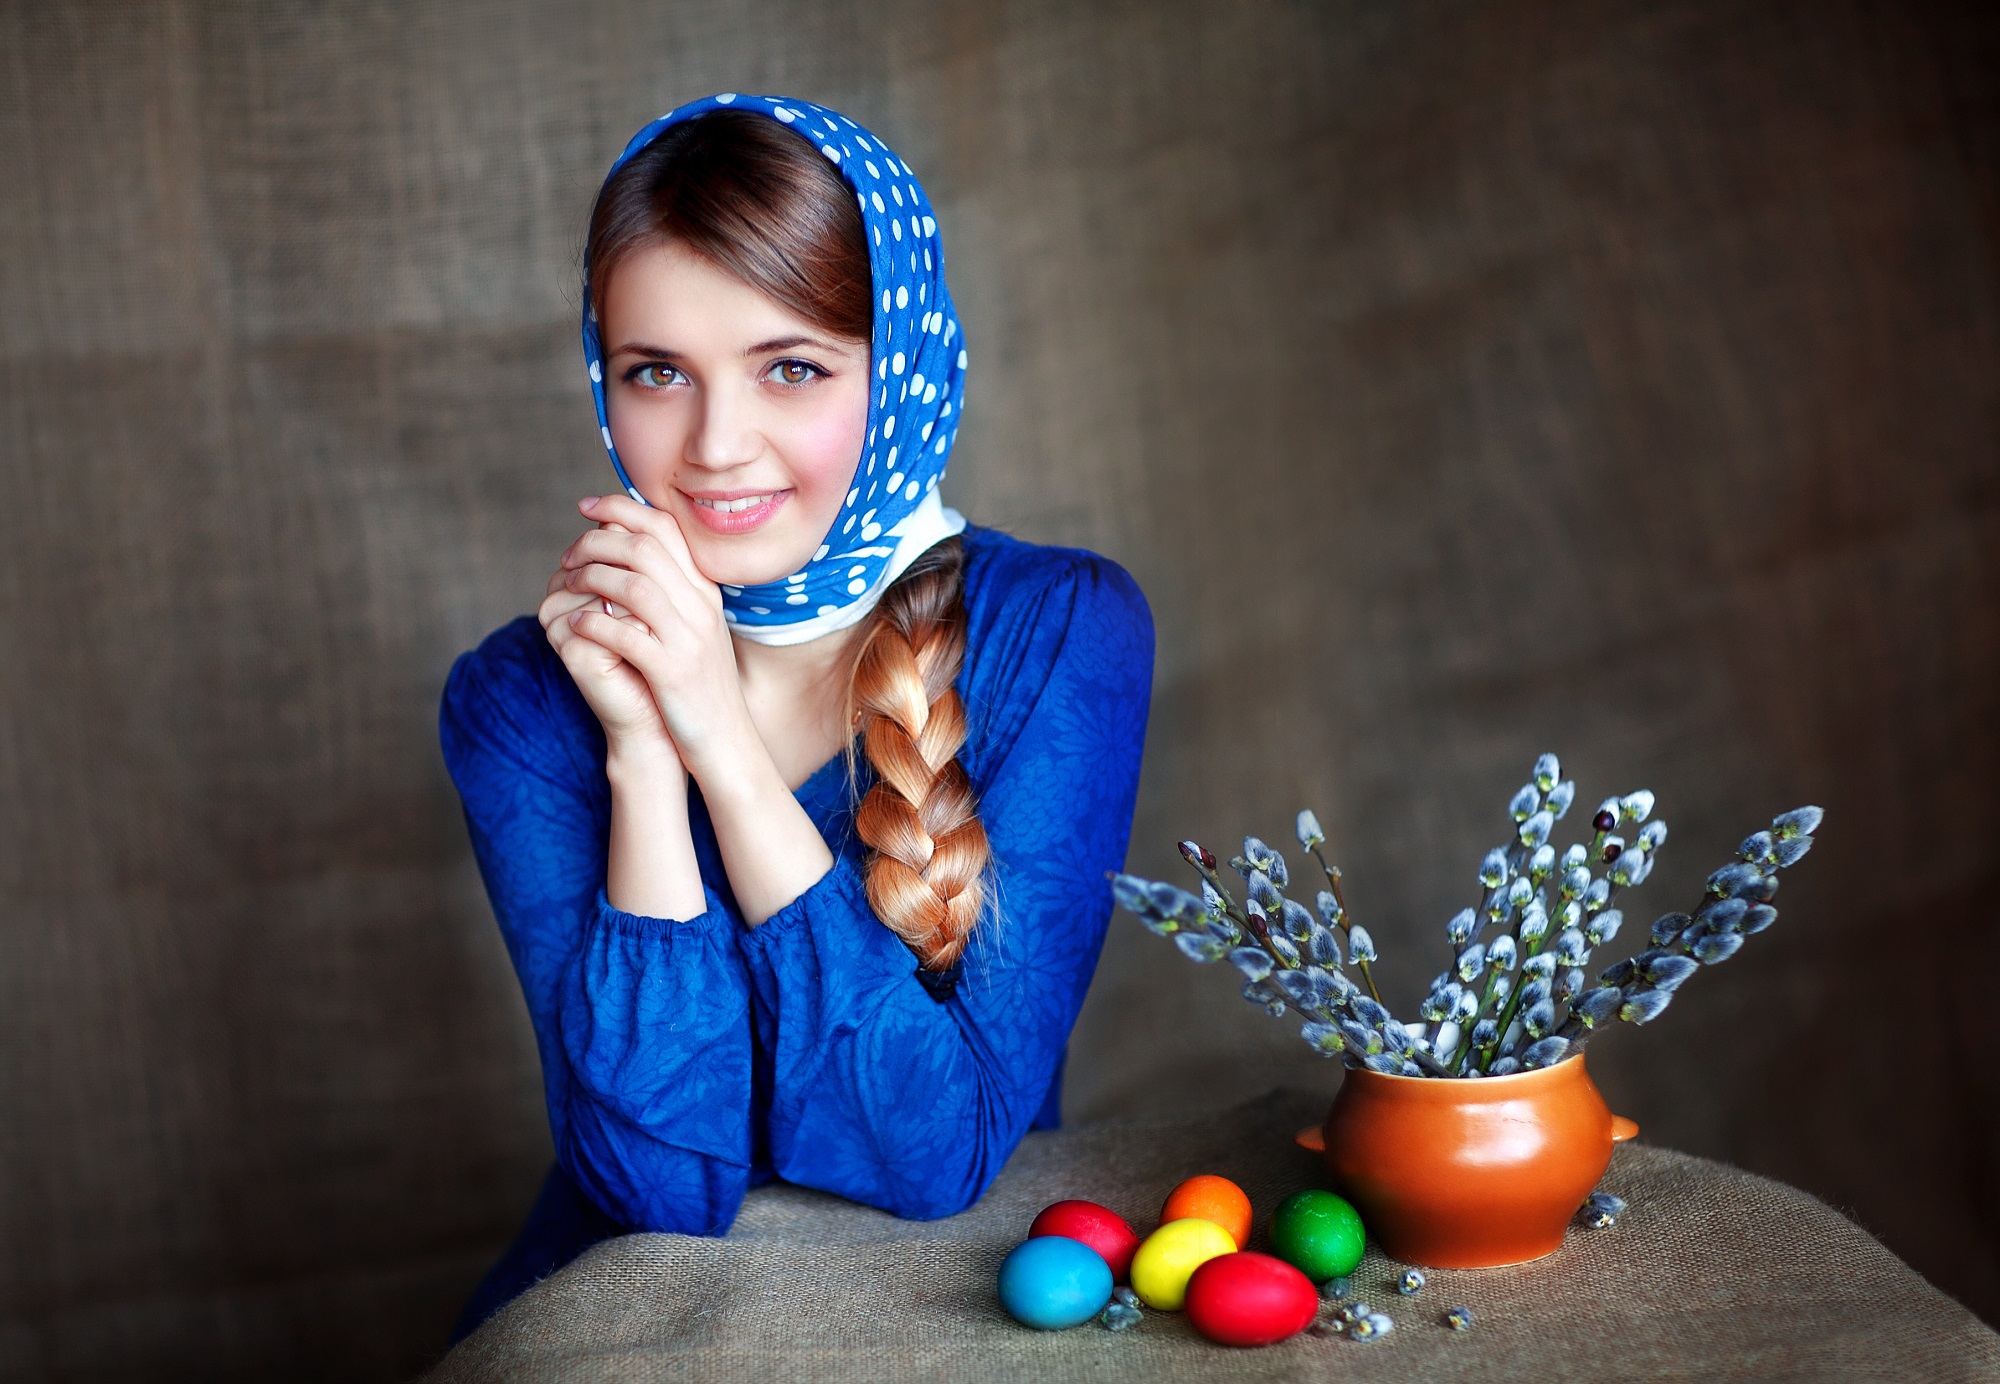 Православные праздники в календаре 2018 года. Источник фото: Shutterstock